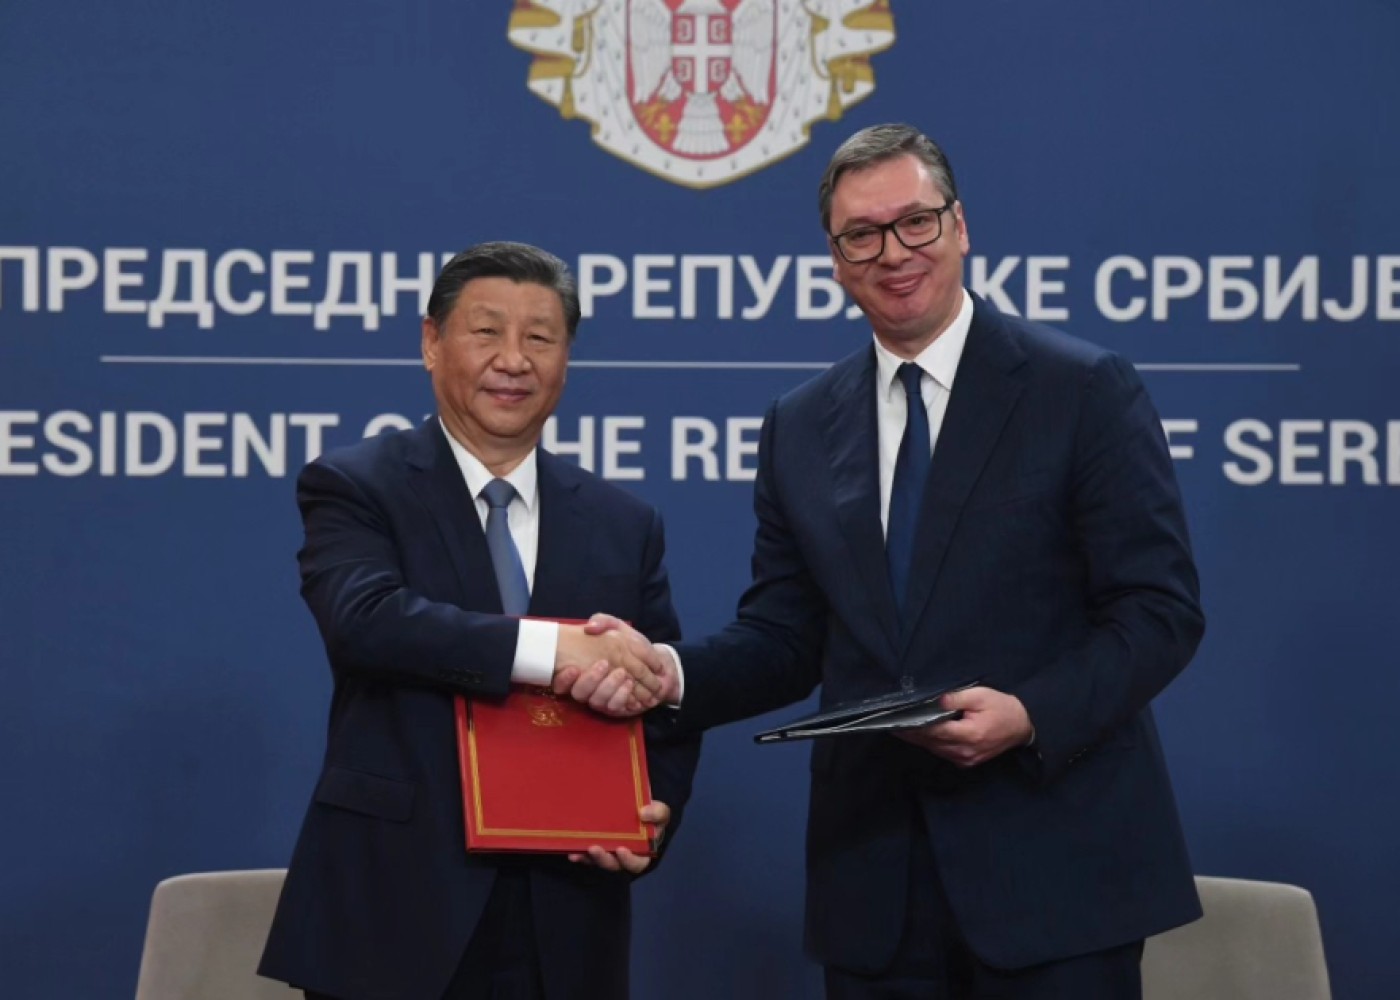 Serbiya və Çin arasında 28 sənədimzalandı